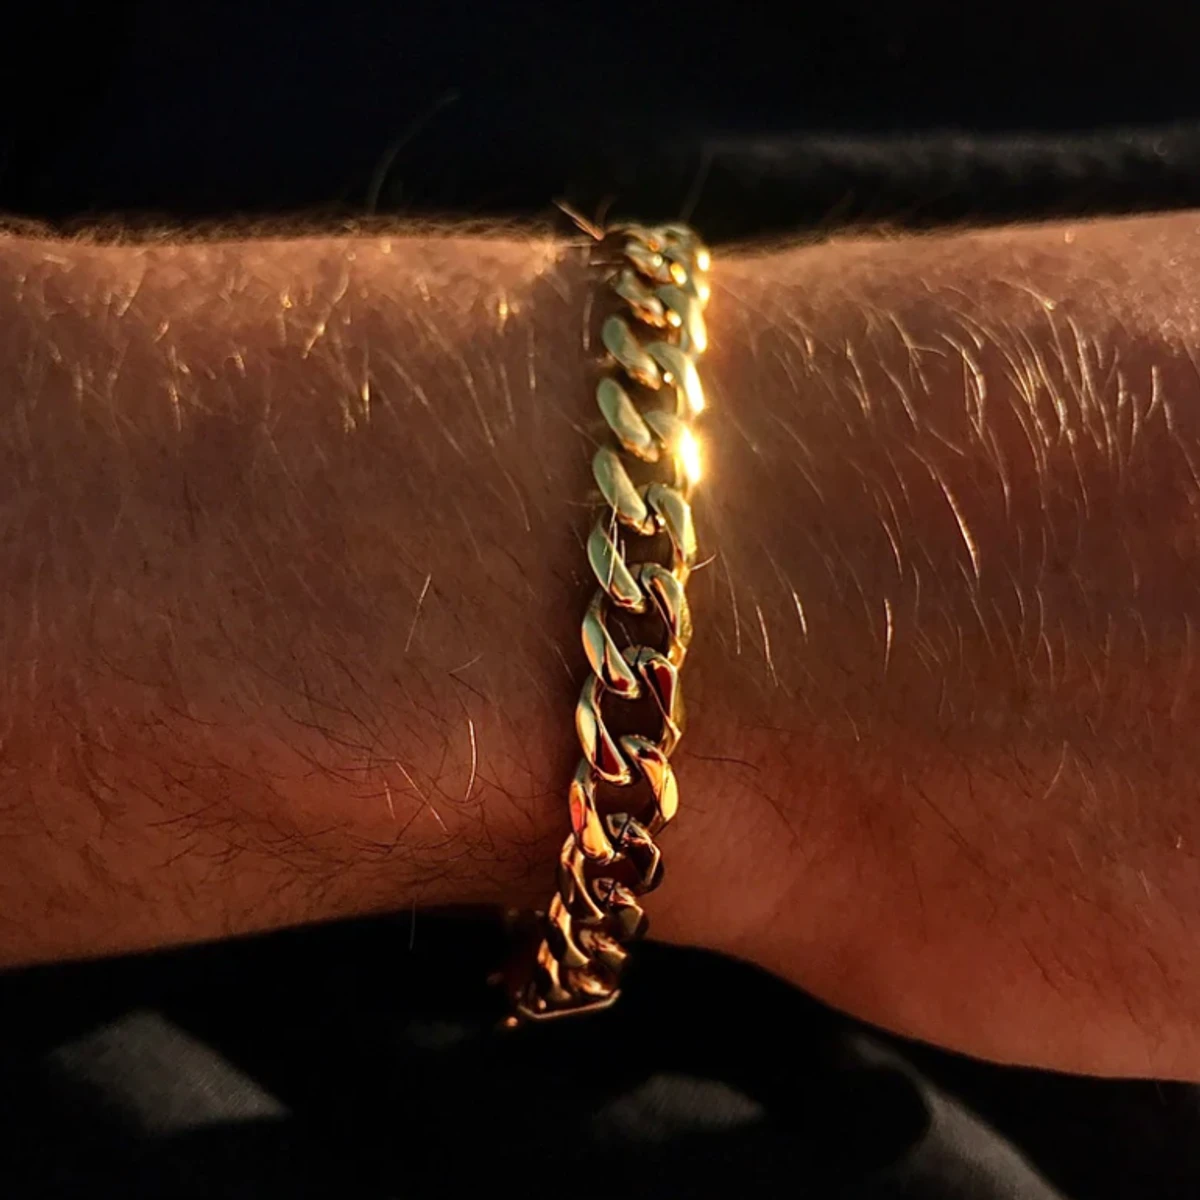 Stainless Steel Bracelet for Men- Golden Bracelet